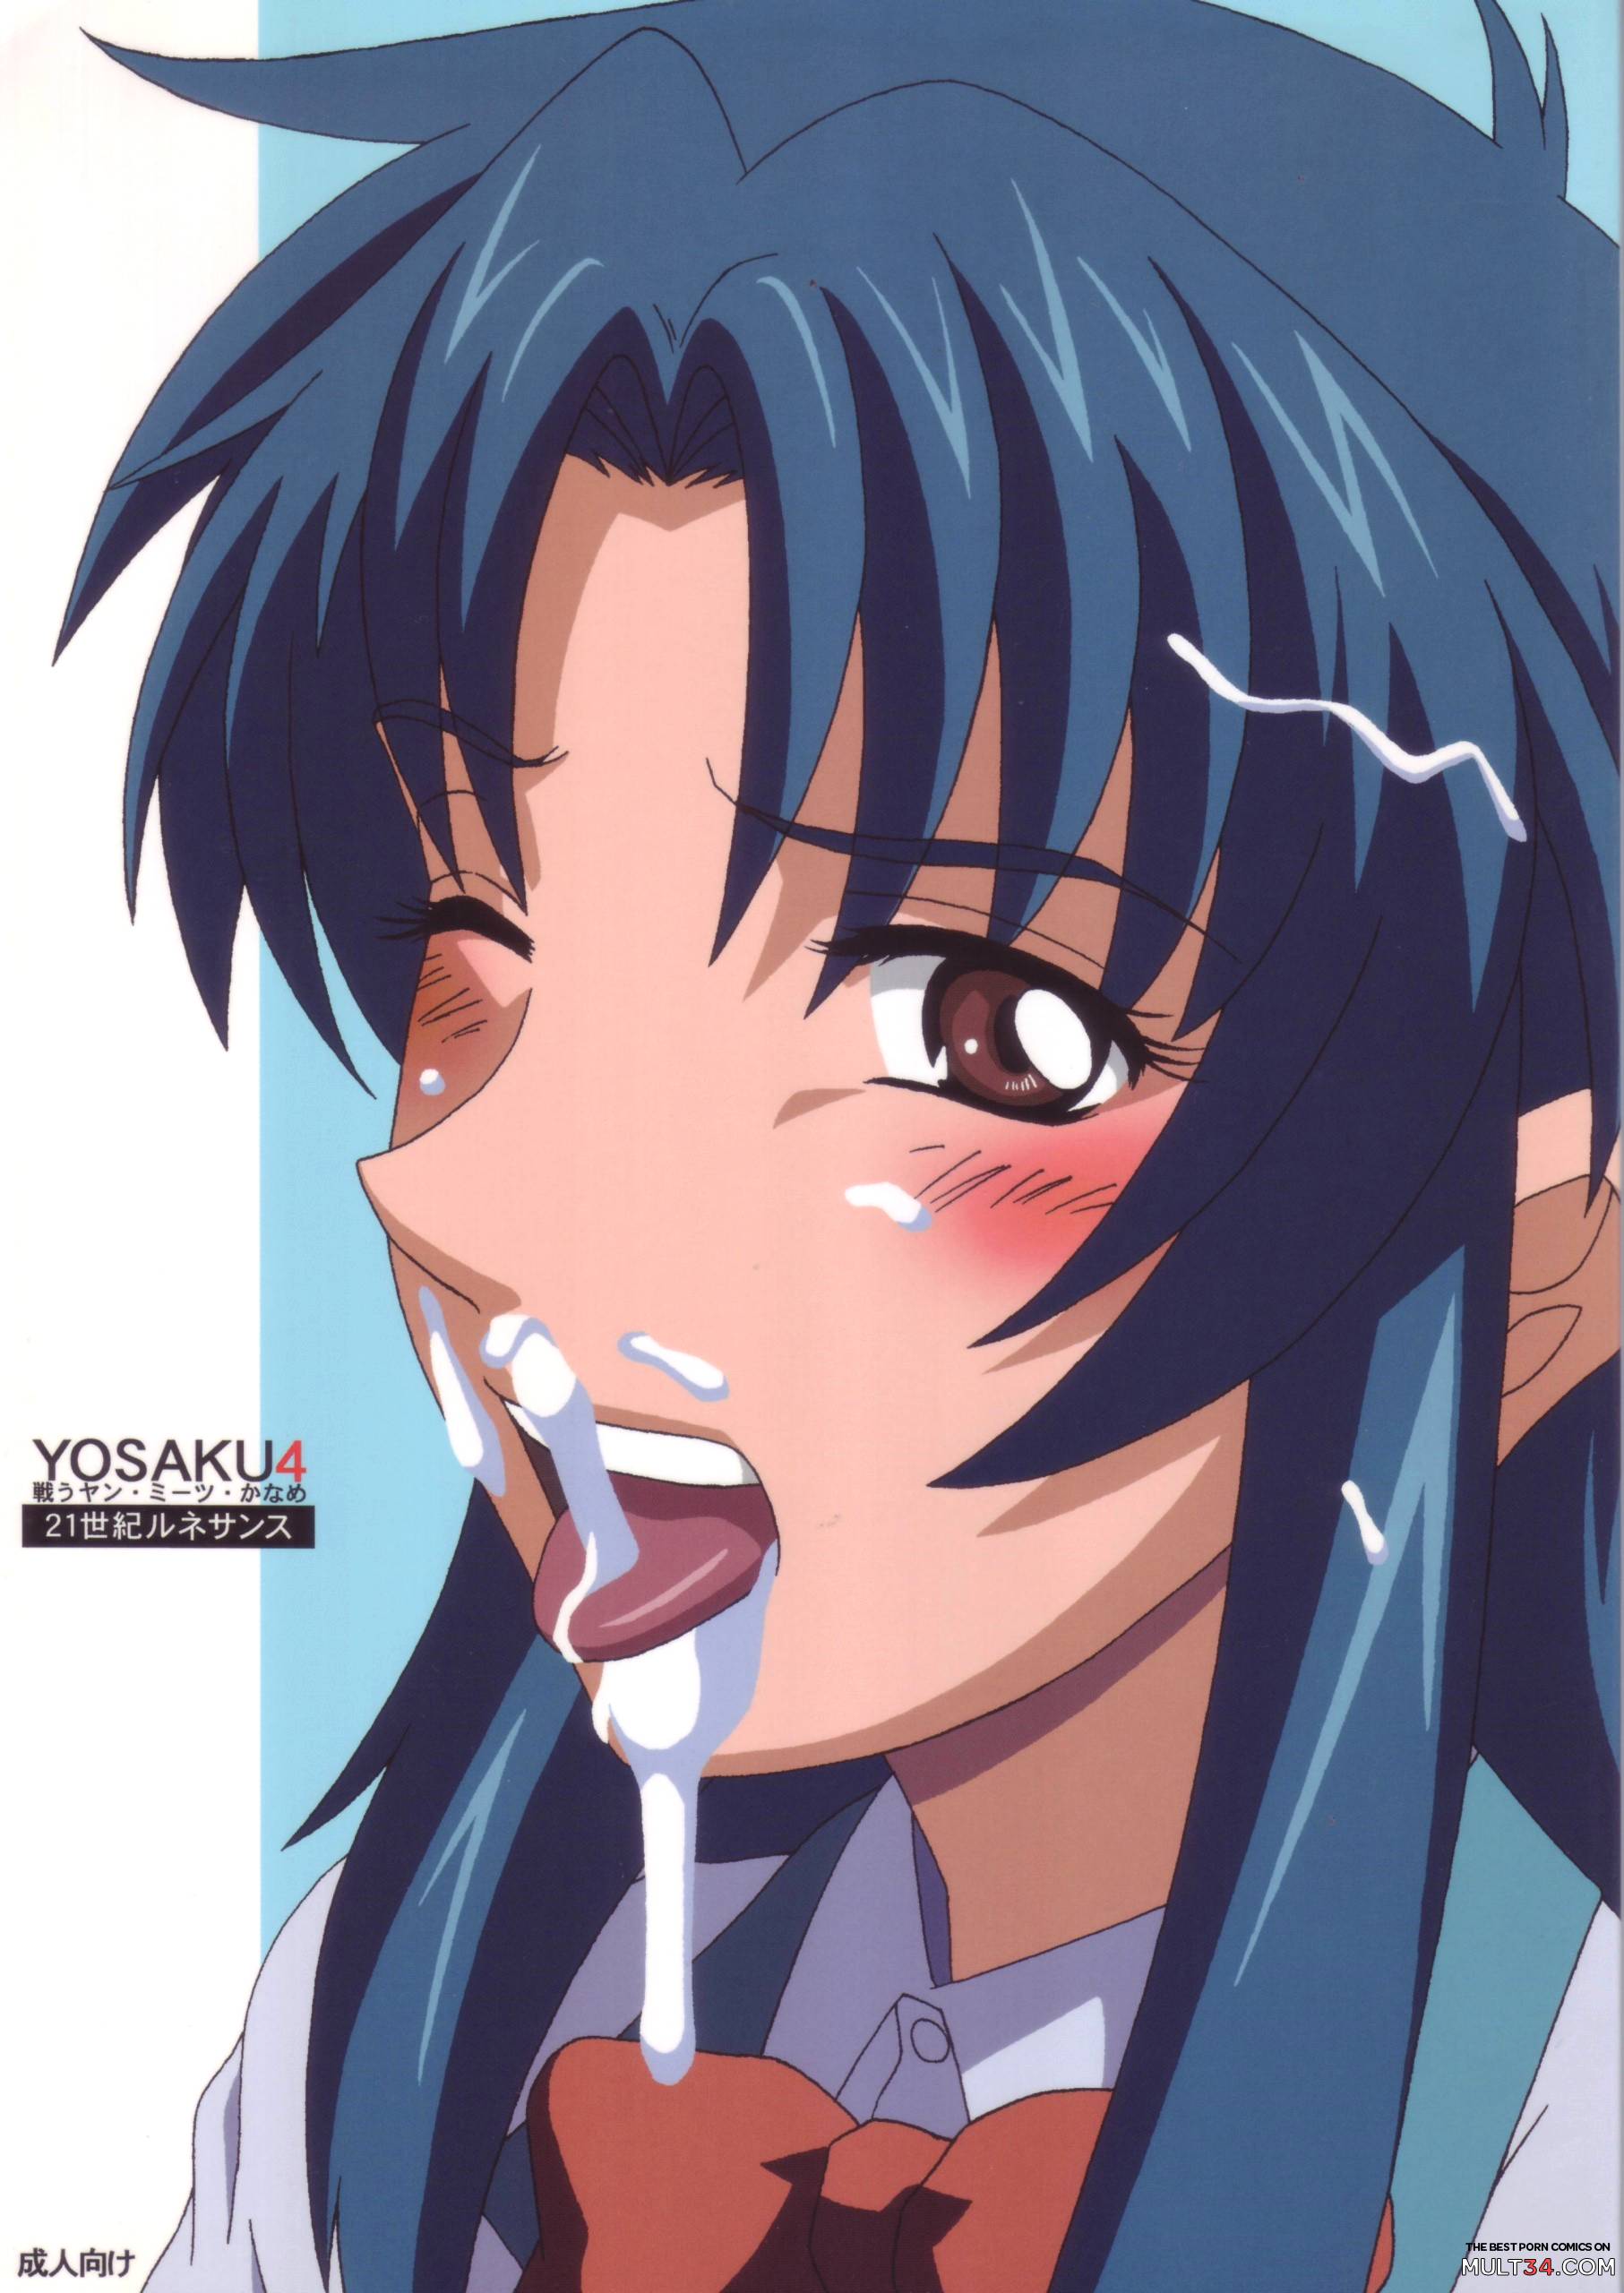 1813px x 2560px - YOSAKU4 hentai manga for free | MULT34